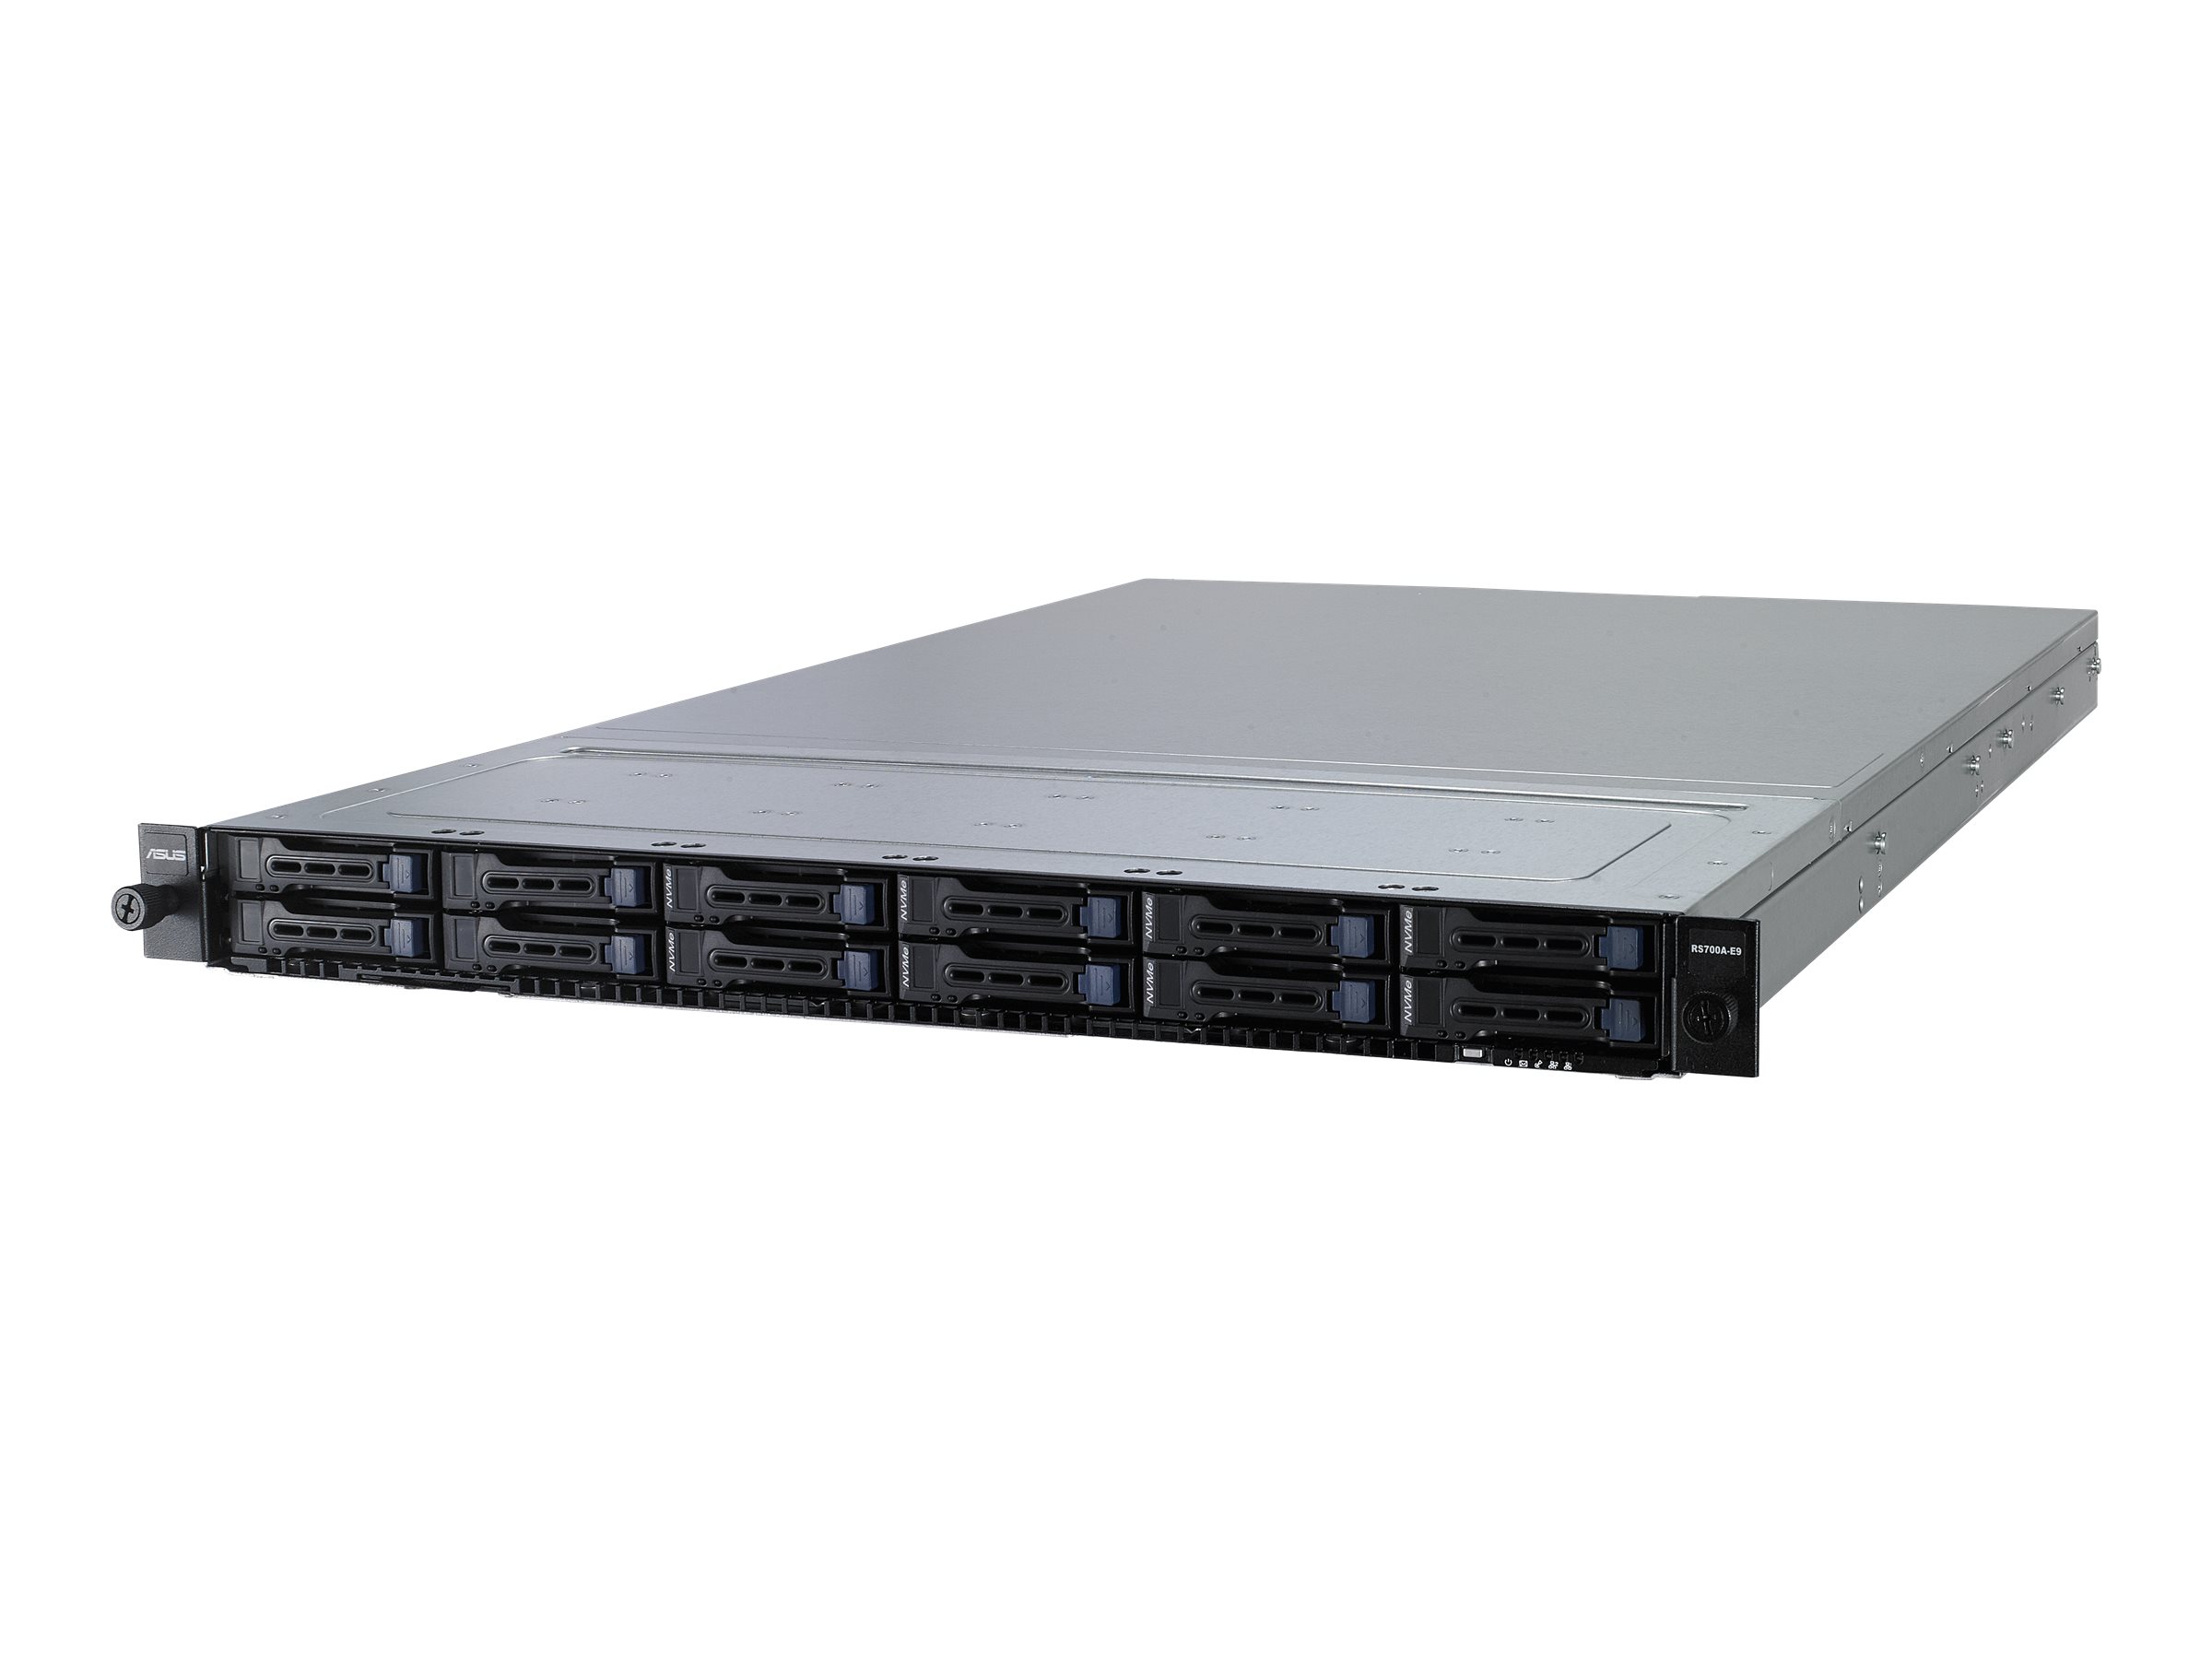 ASUS RS700A-E9-RS12 - Server - Rack-Montage - 1U - zweiweg - keine CPU - RAM 0 GB - SATA/PCI Express - Hot-Swap 6.4 cm (2.5")